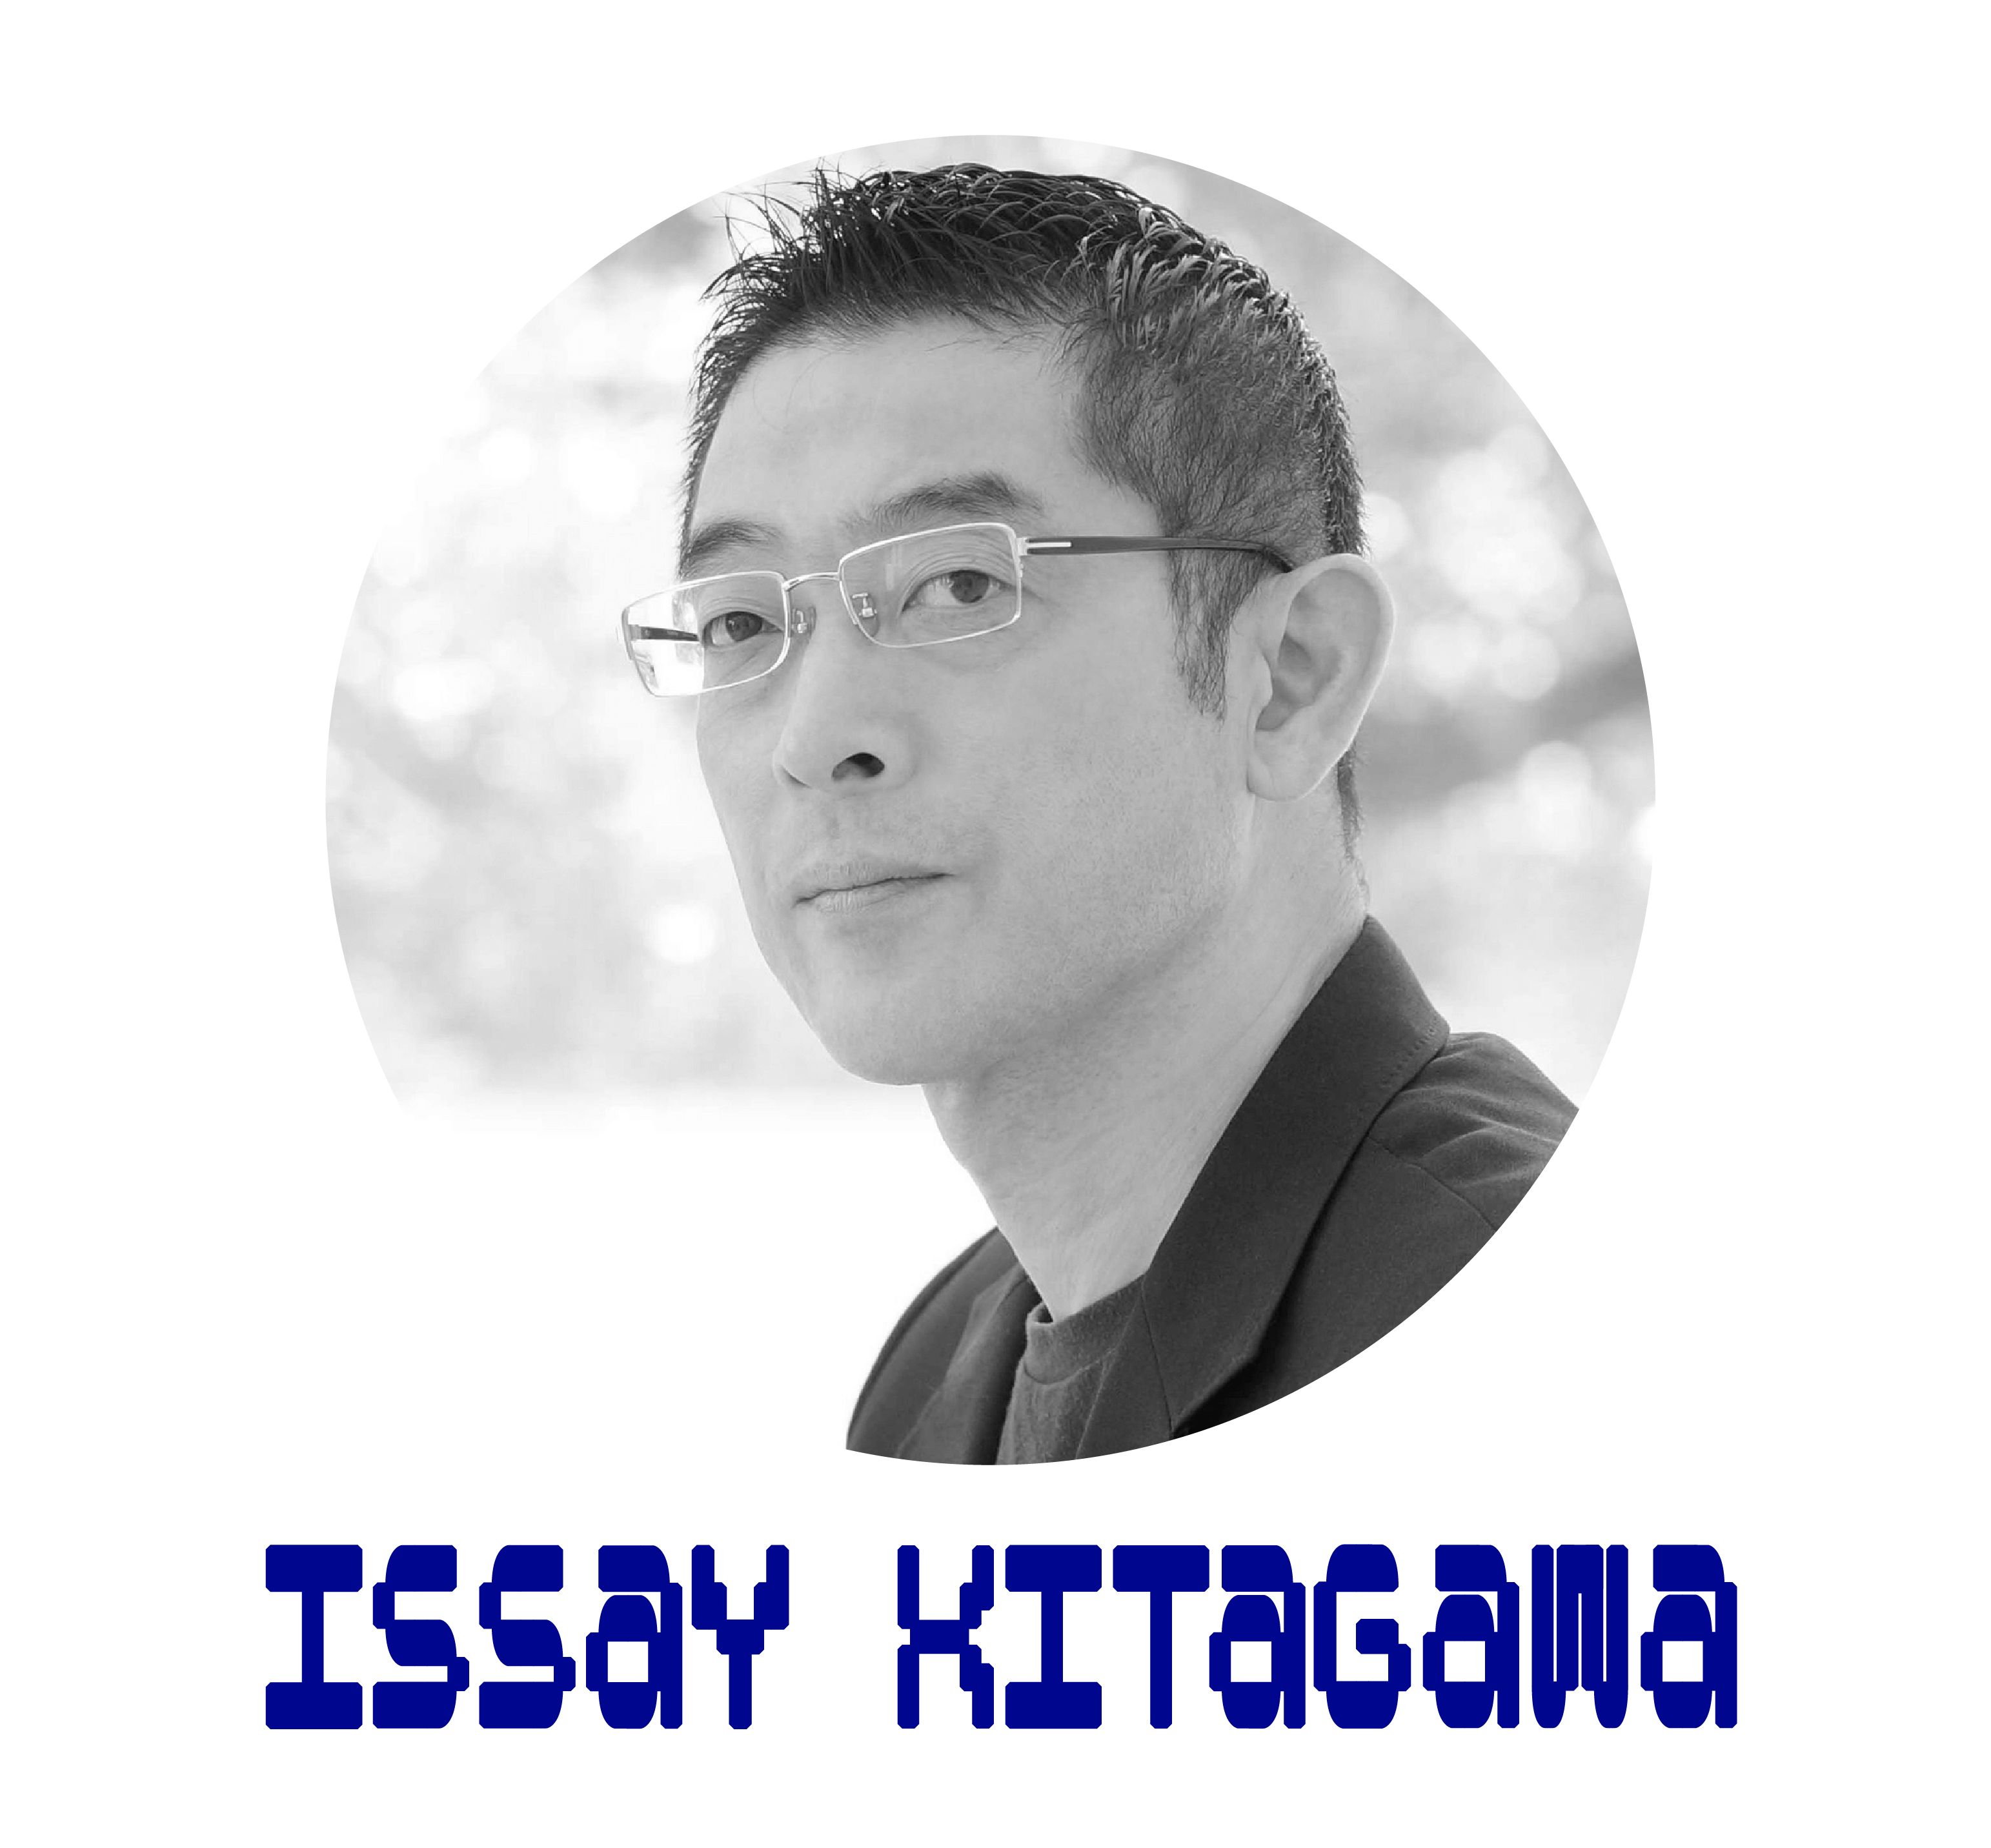 Issay Kitagawa